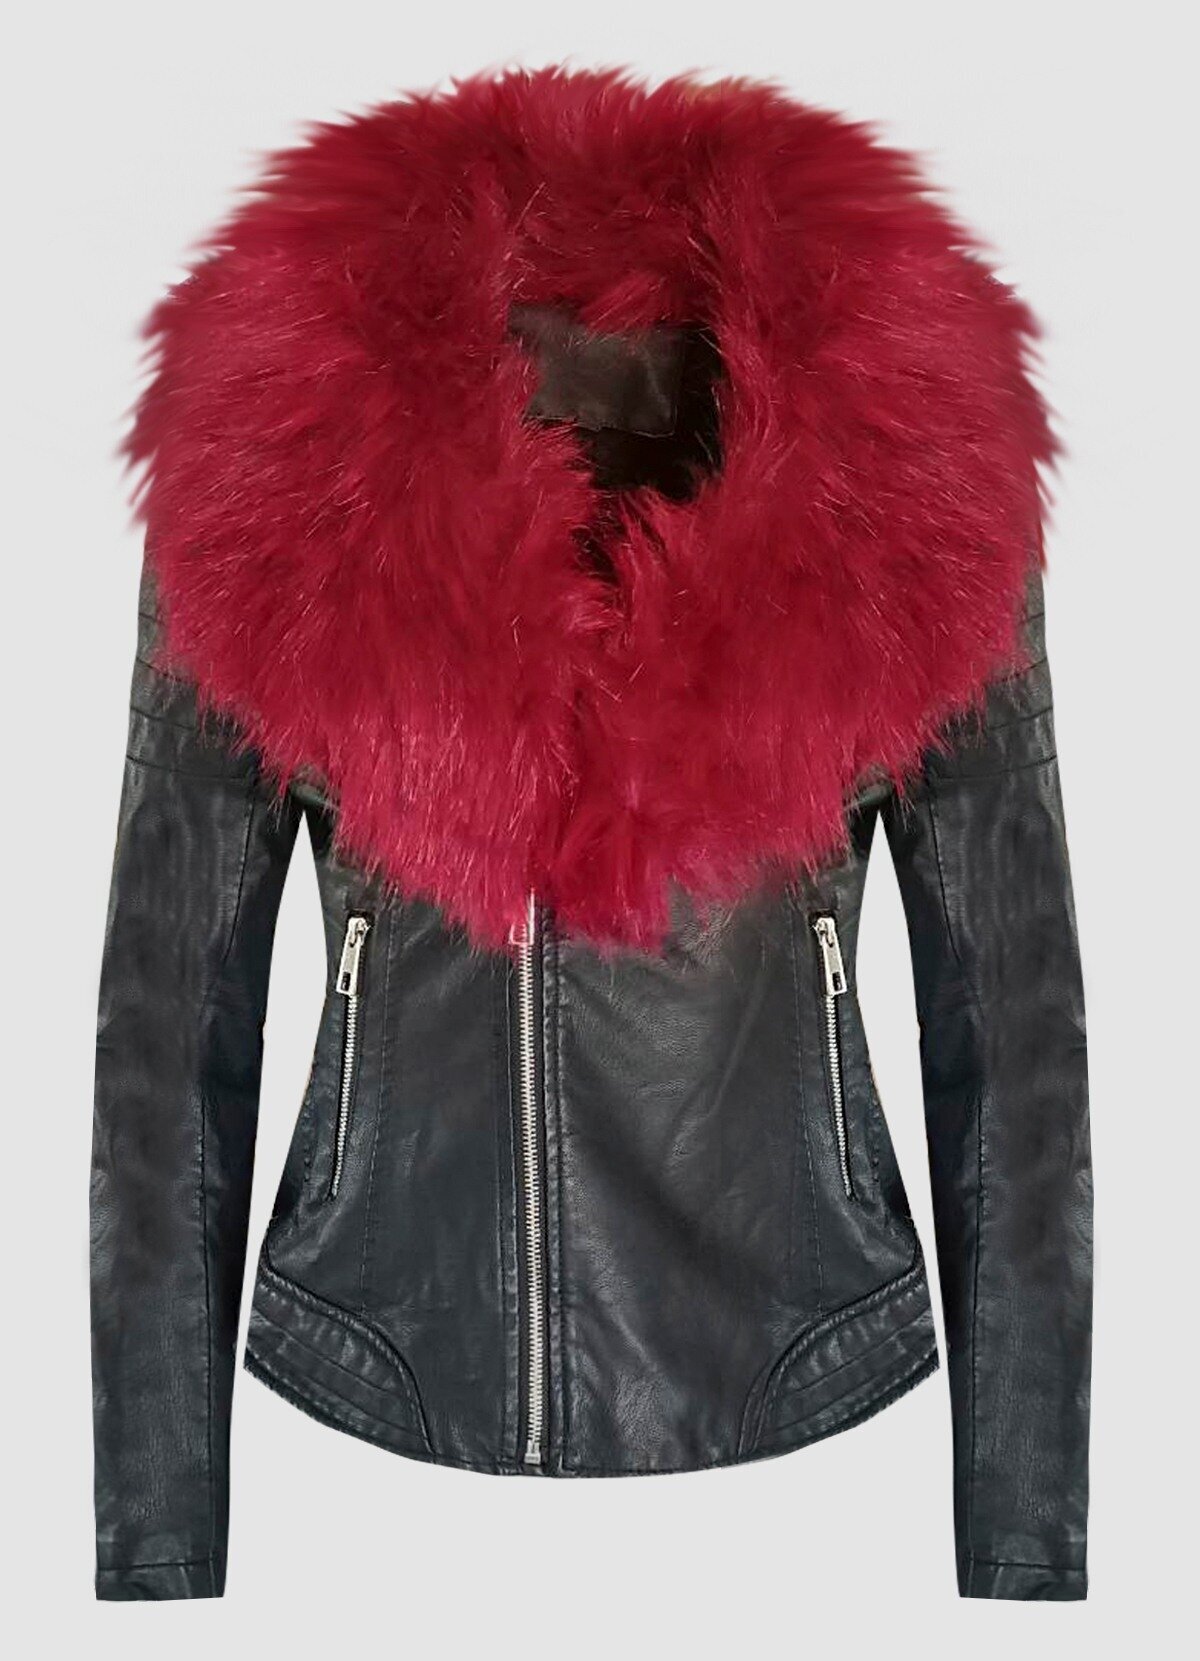 δερματίνη jacket με μπορντό γούνα στο γιακά & γούνα εσωτερικά -  Parizianista.gr